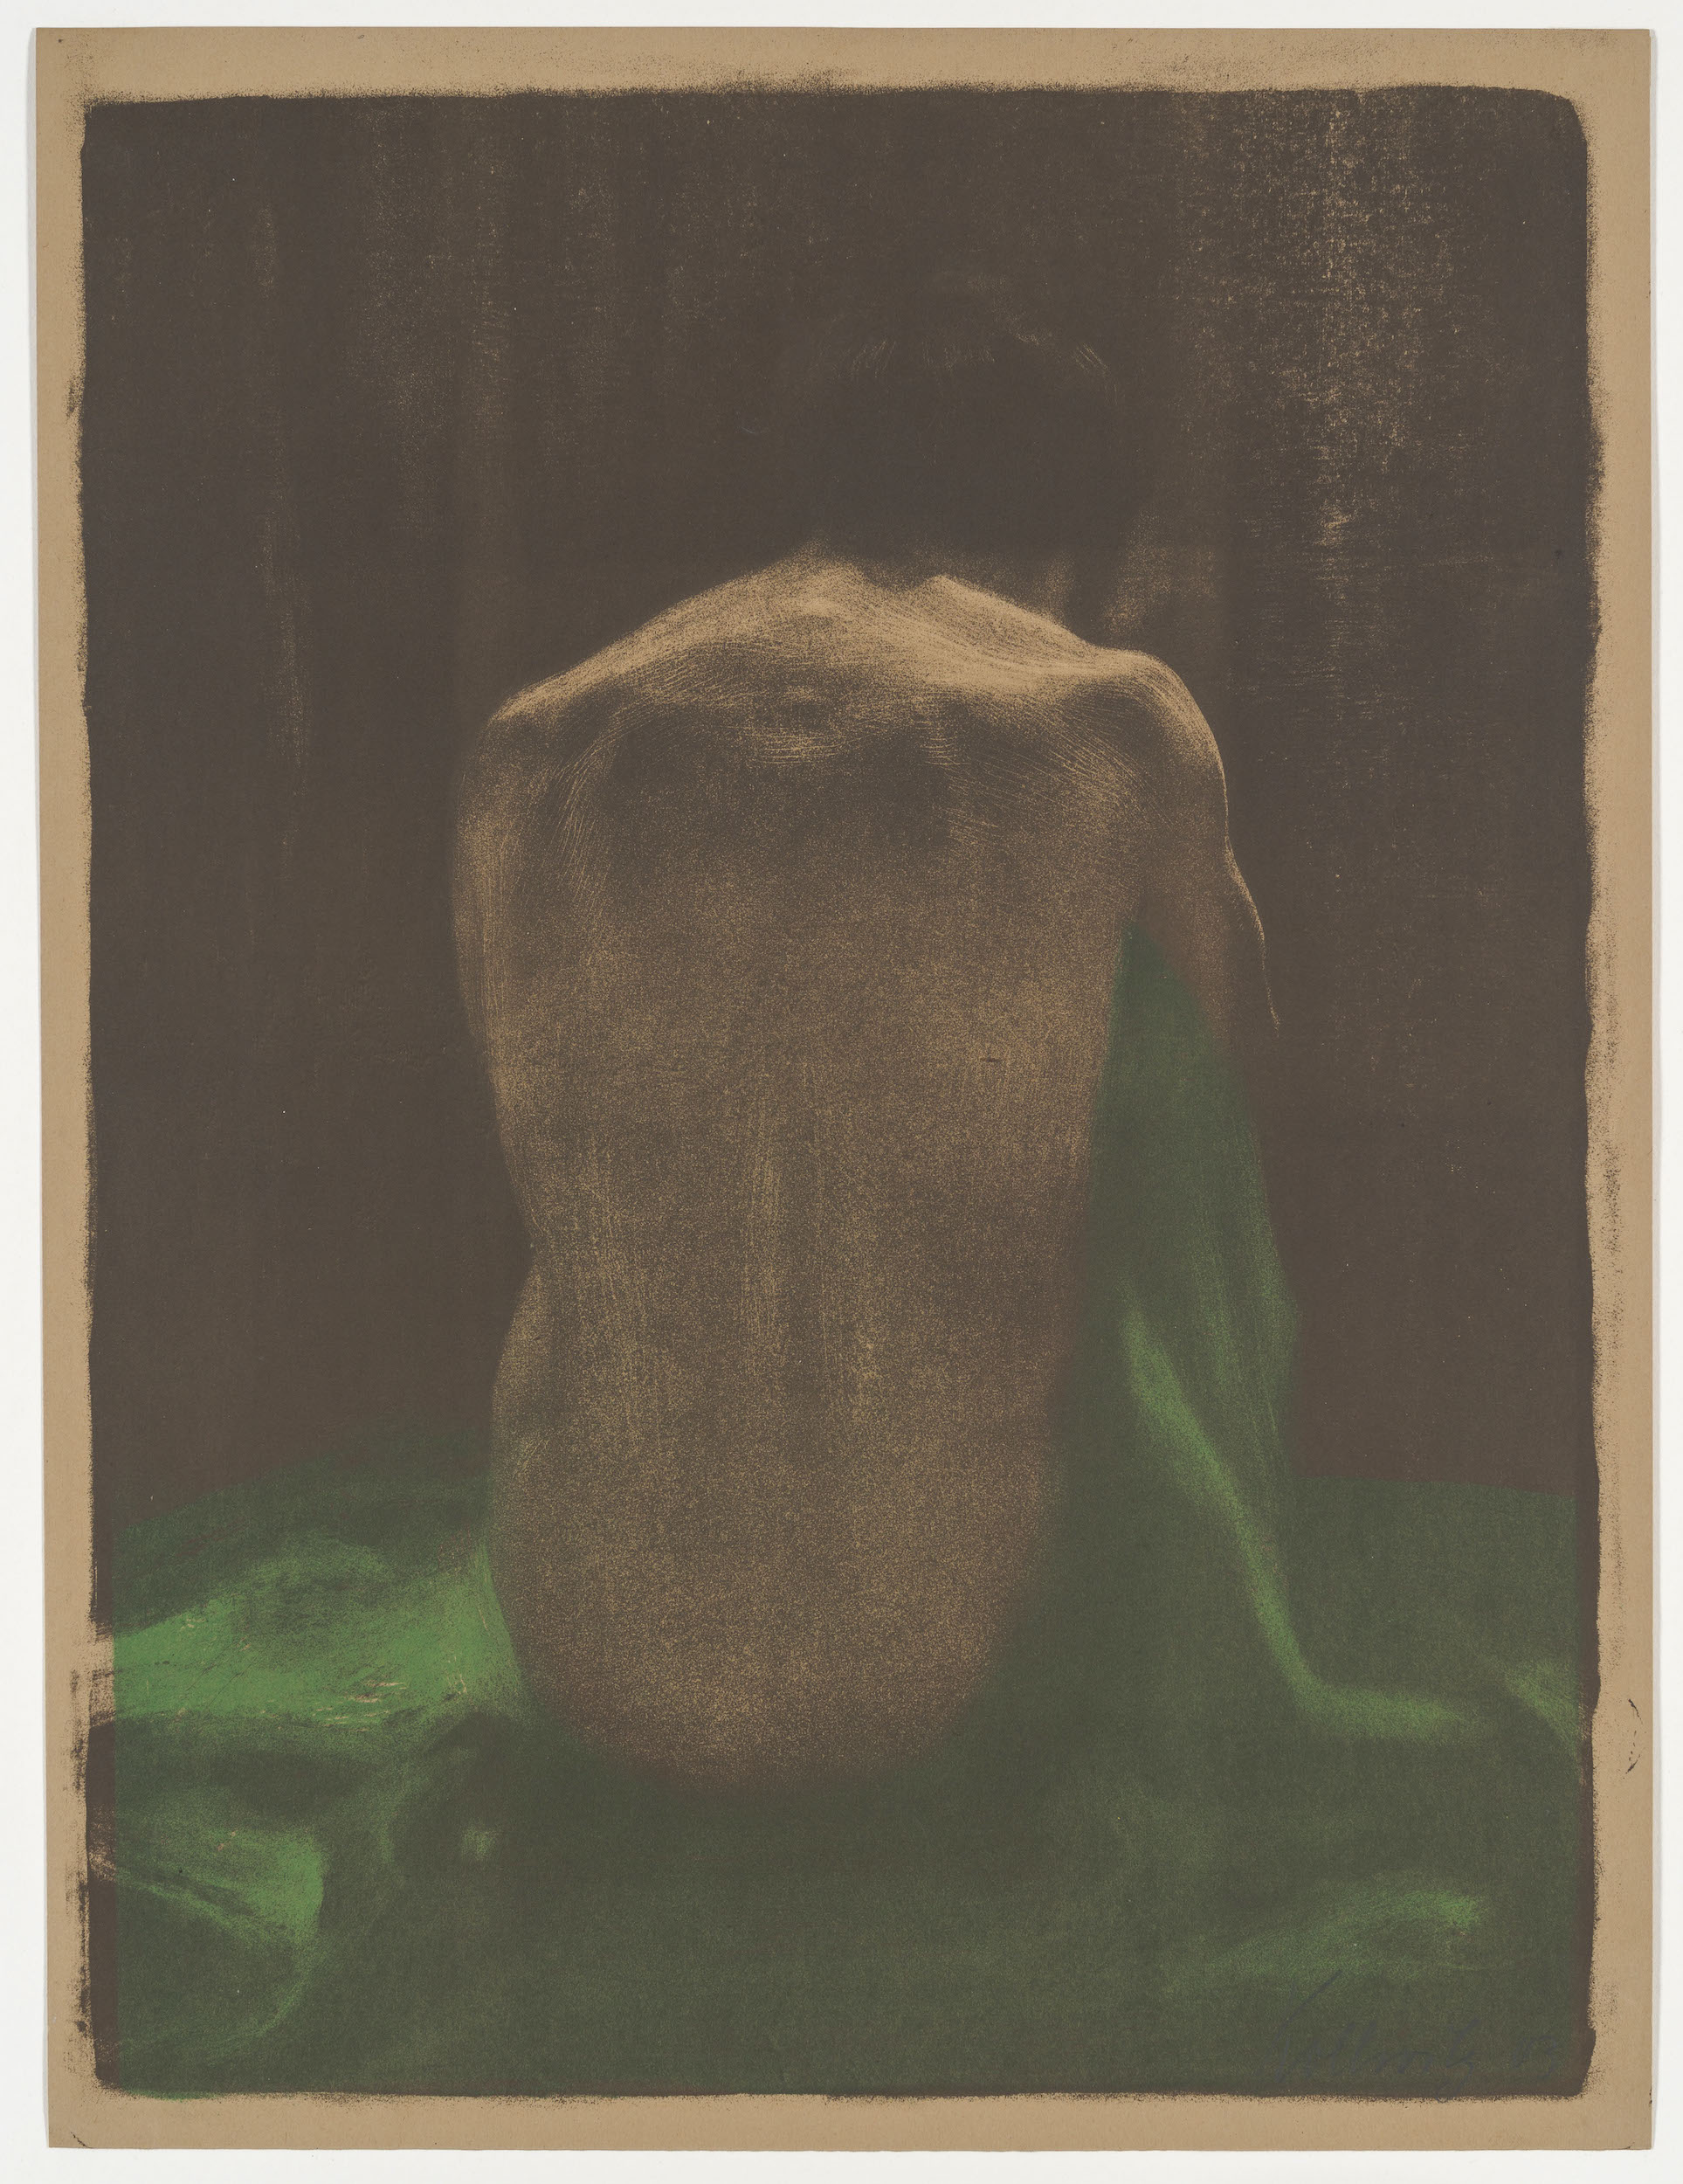 Nu féminin avec châle vert by Käthe Kollwitz - 1903 - 58 x 44 cm Staatliche Kunstsammlungen Dresden